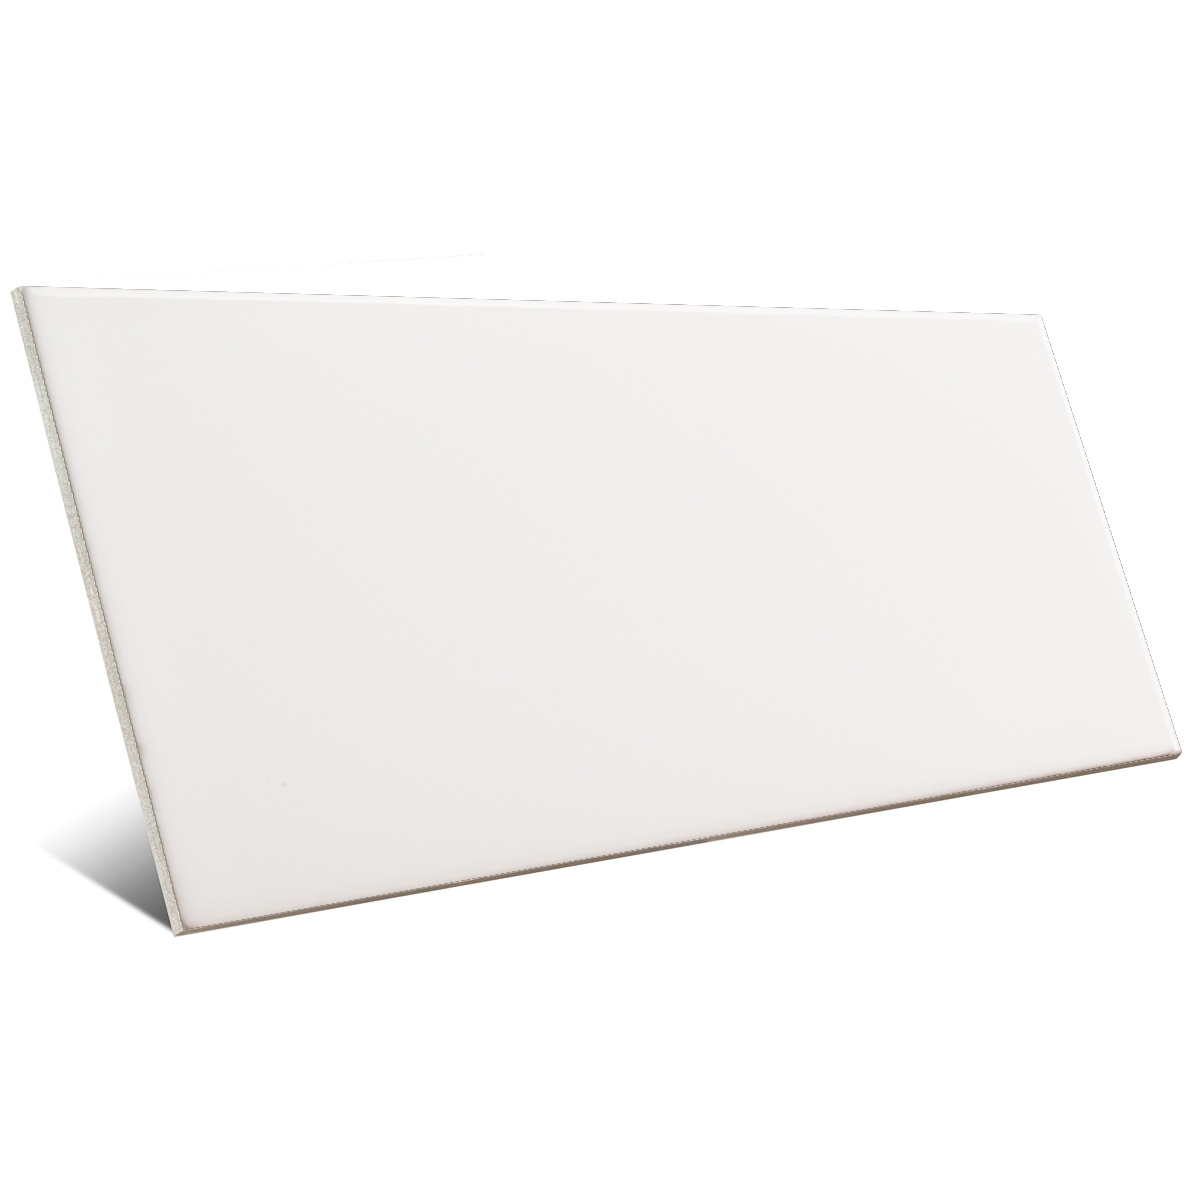 Azulejo pequeño formato en blanco y negro 7.5x15 blanco brillo